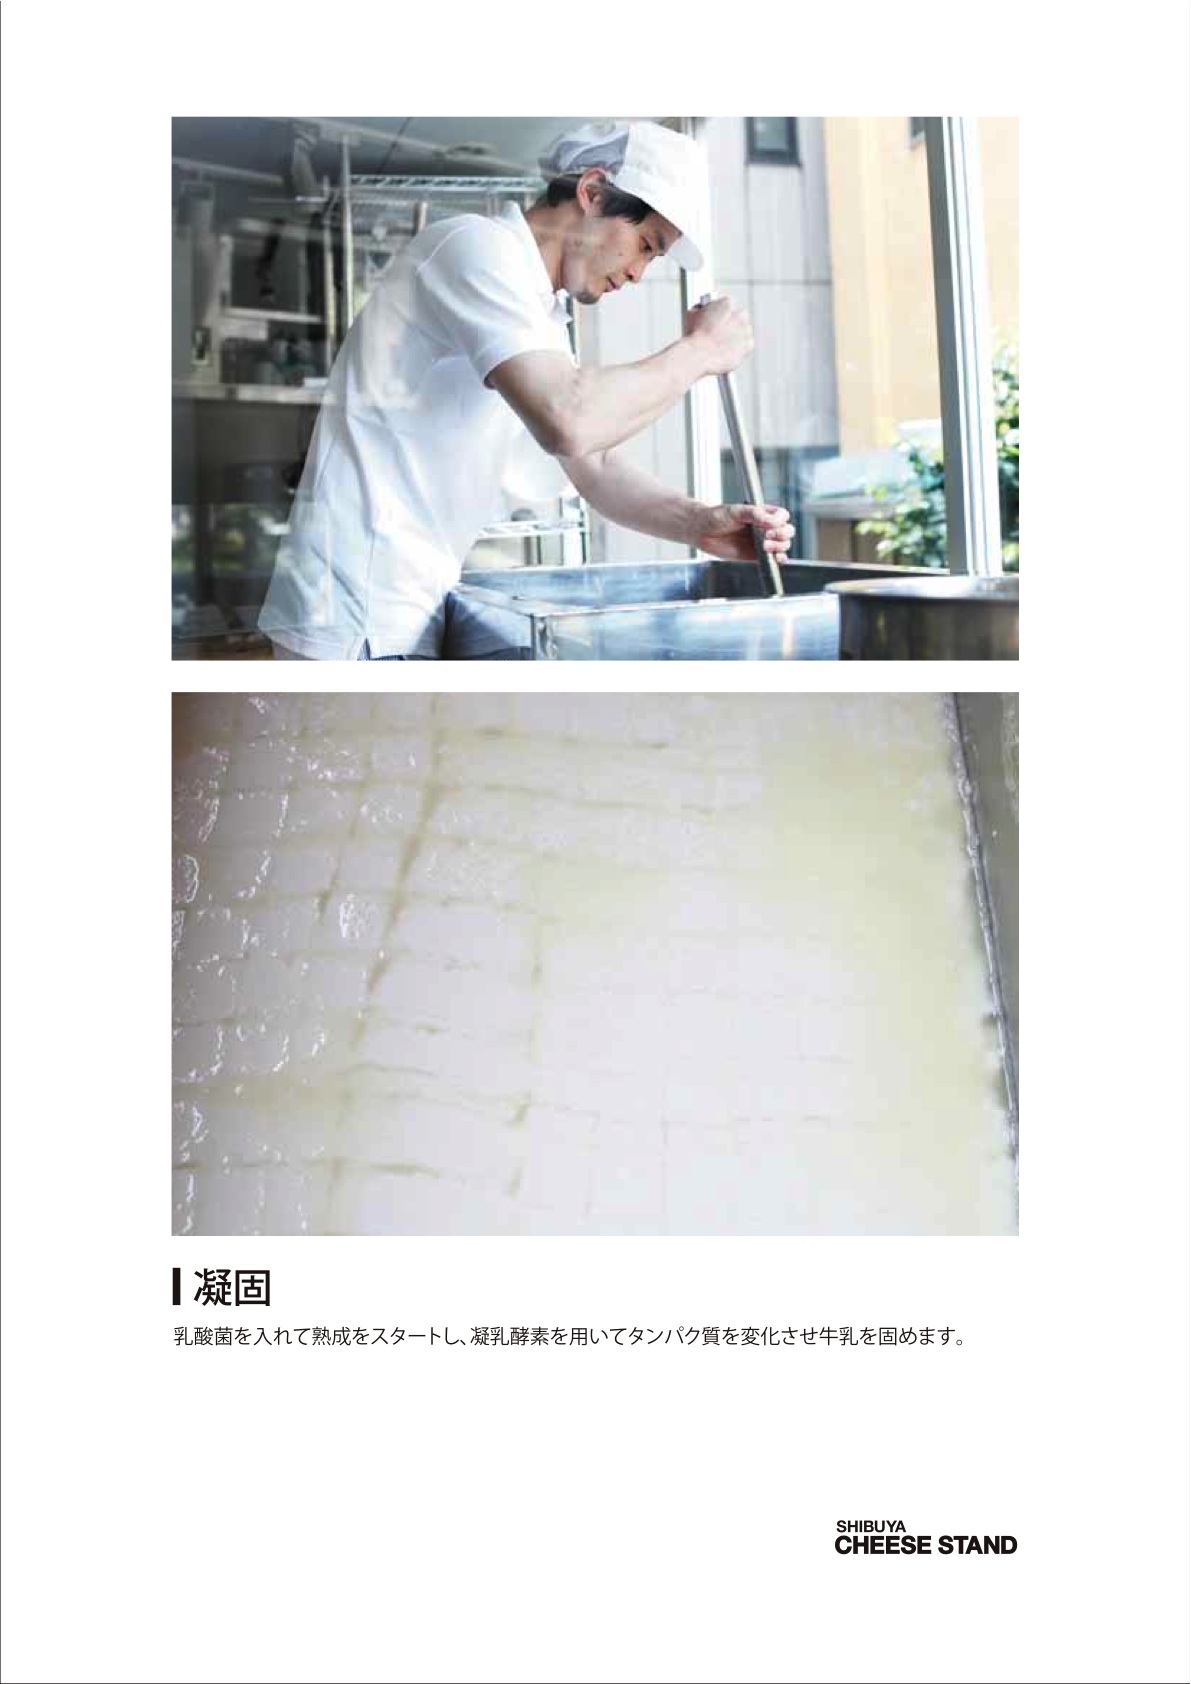 SHIBUYA CHEESE STAND　チーズ製造工程です！_c0135436_18571375.jpg